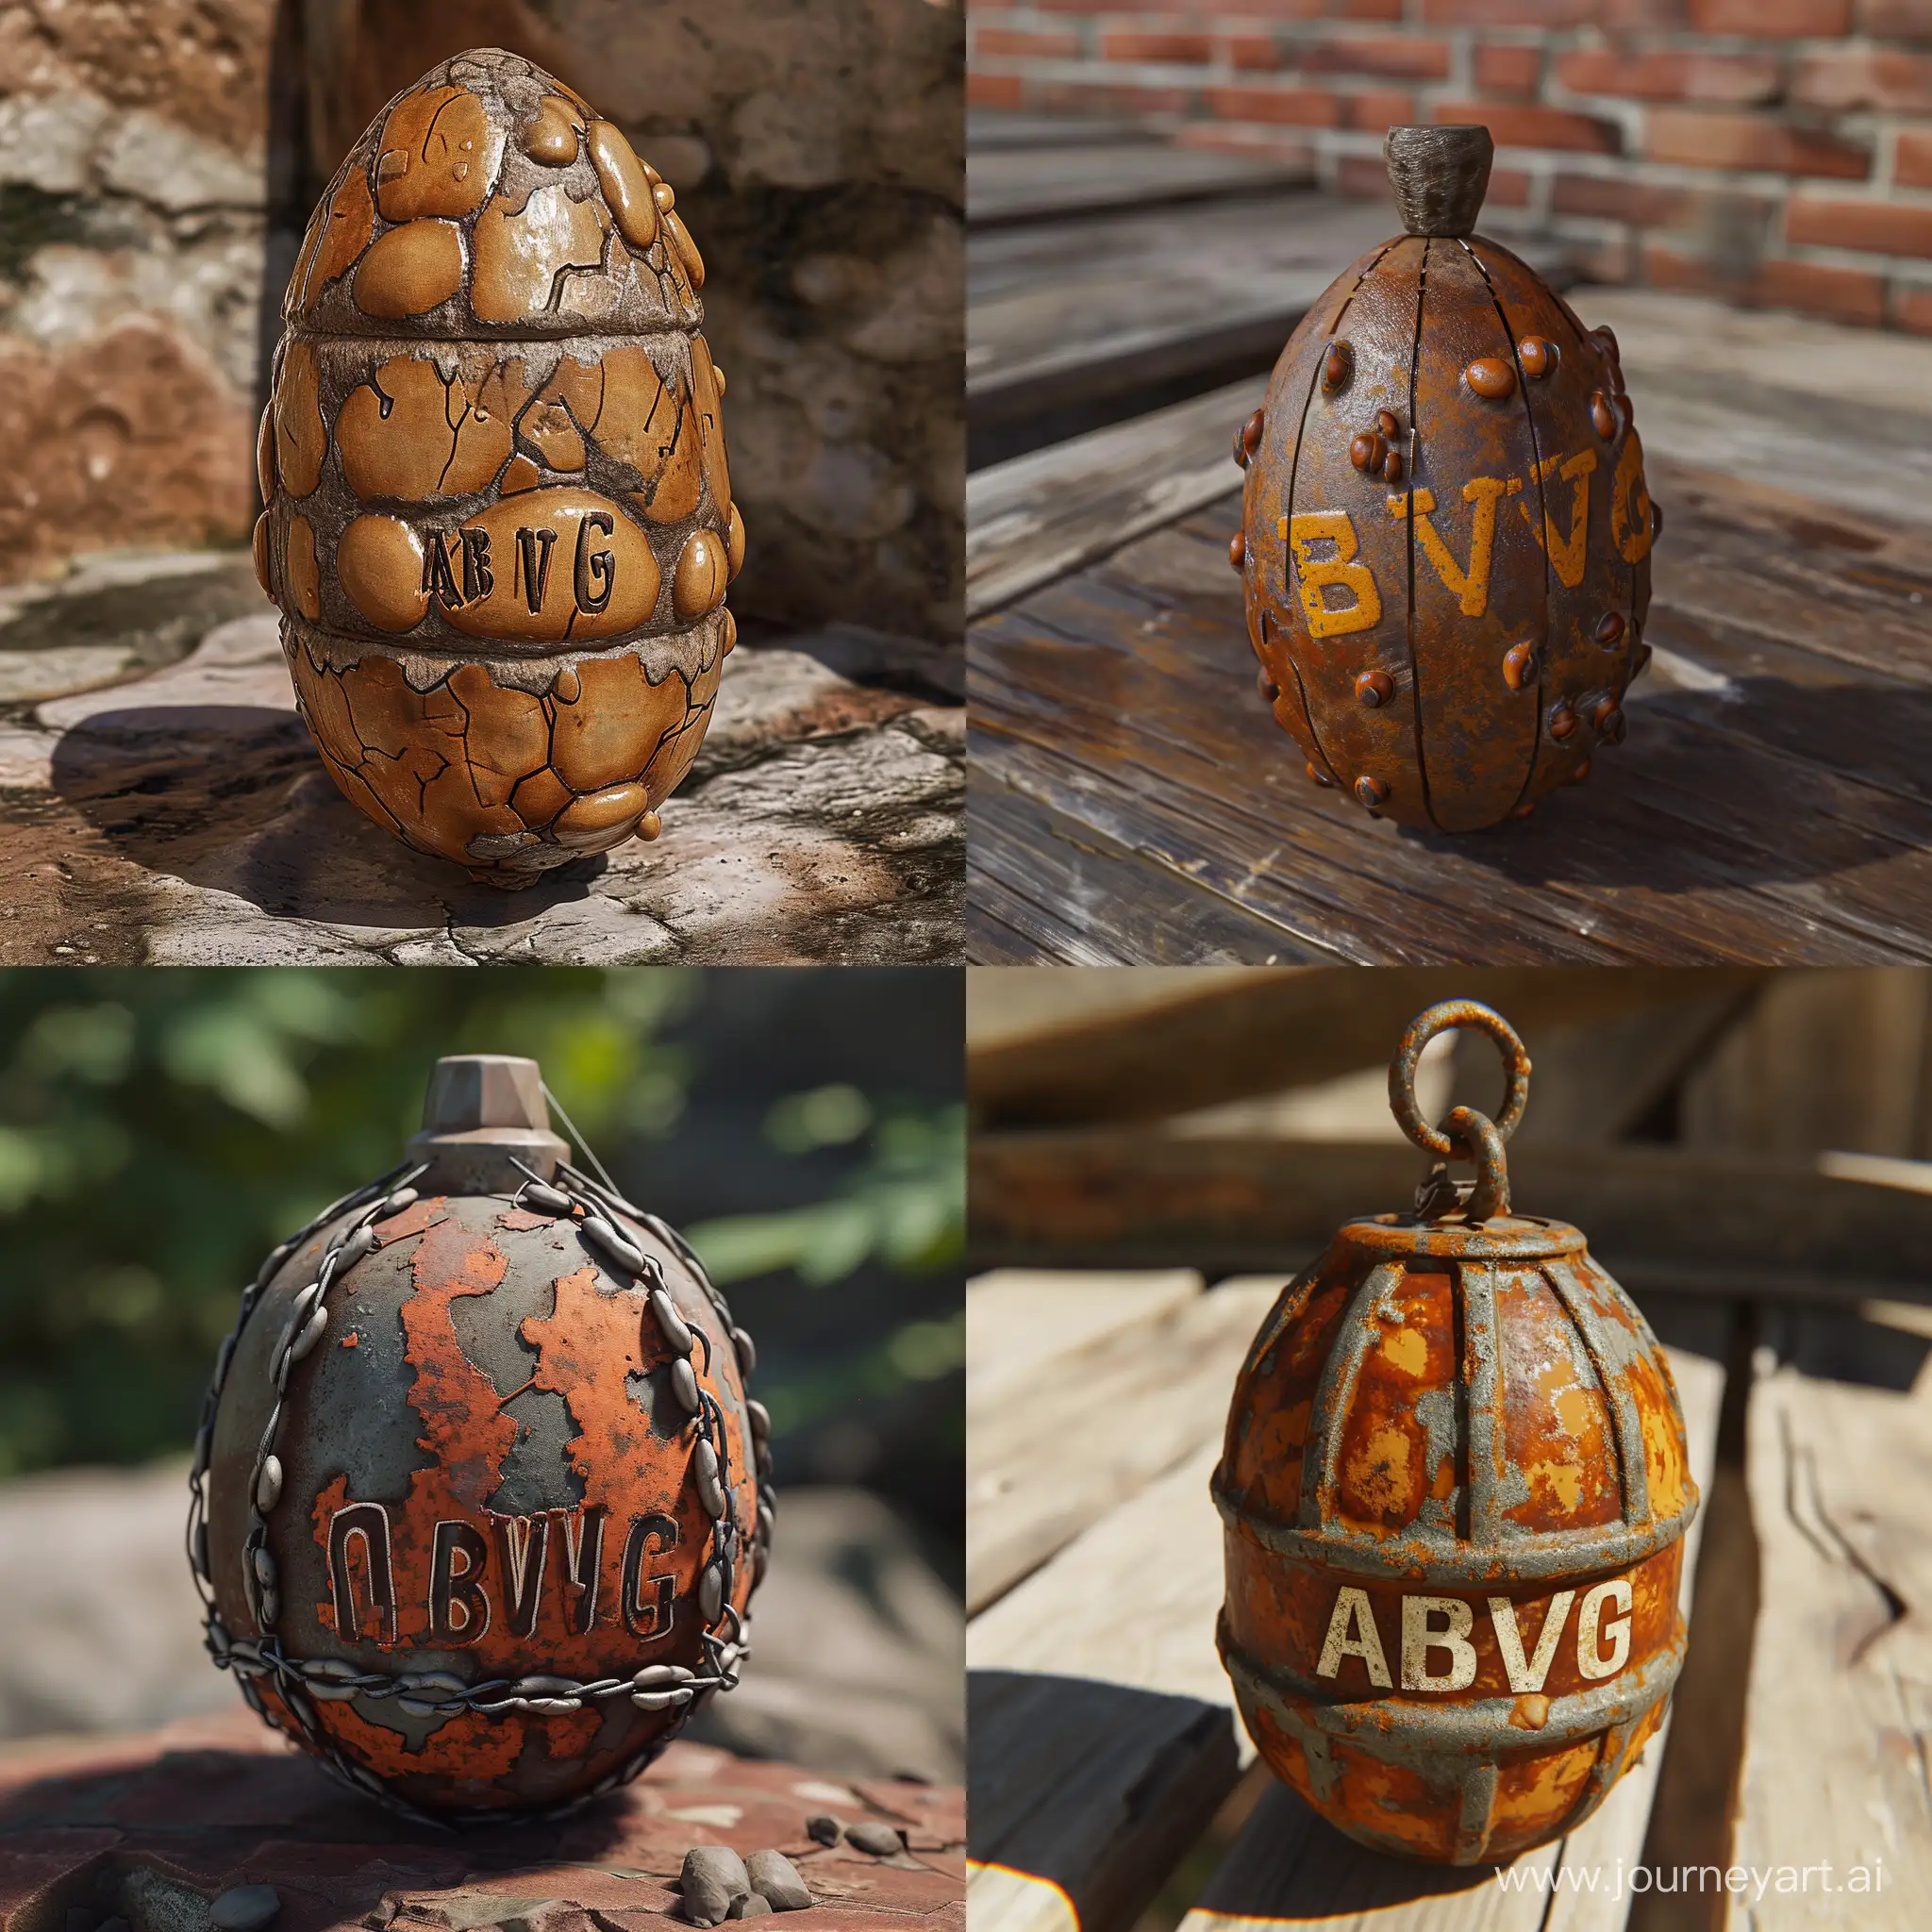 создания бобовой гранаты из игры Rust с надписью "ABVG"